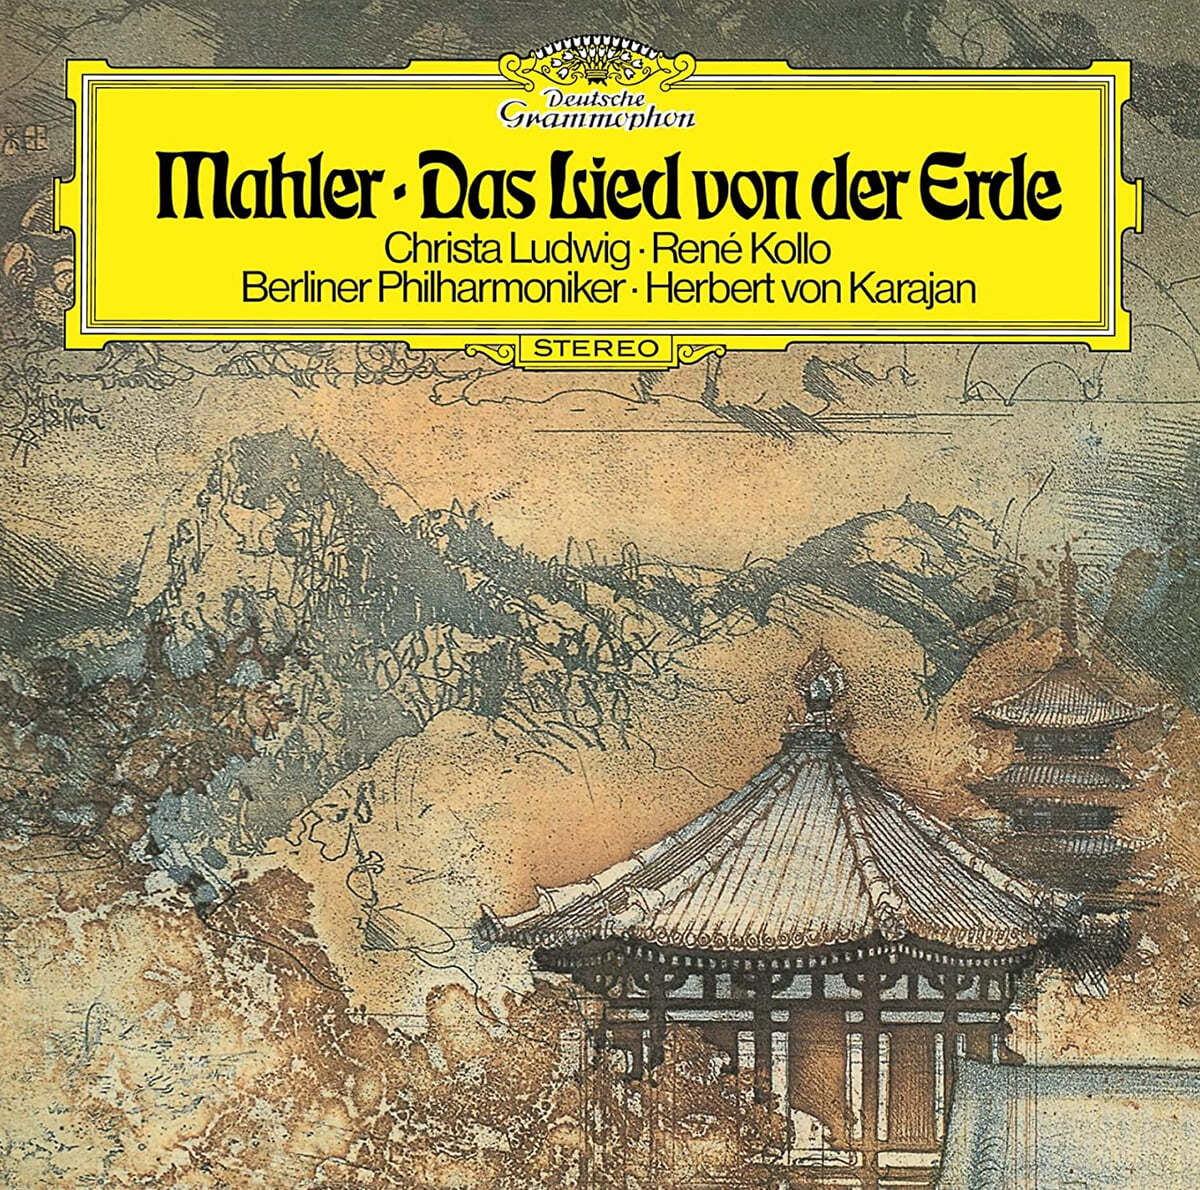 Herbert von Karajan 말러: 대지의 노래 (Mahler : Das Lied Von Der Erde)